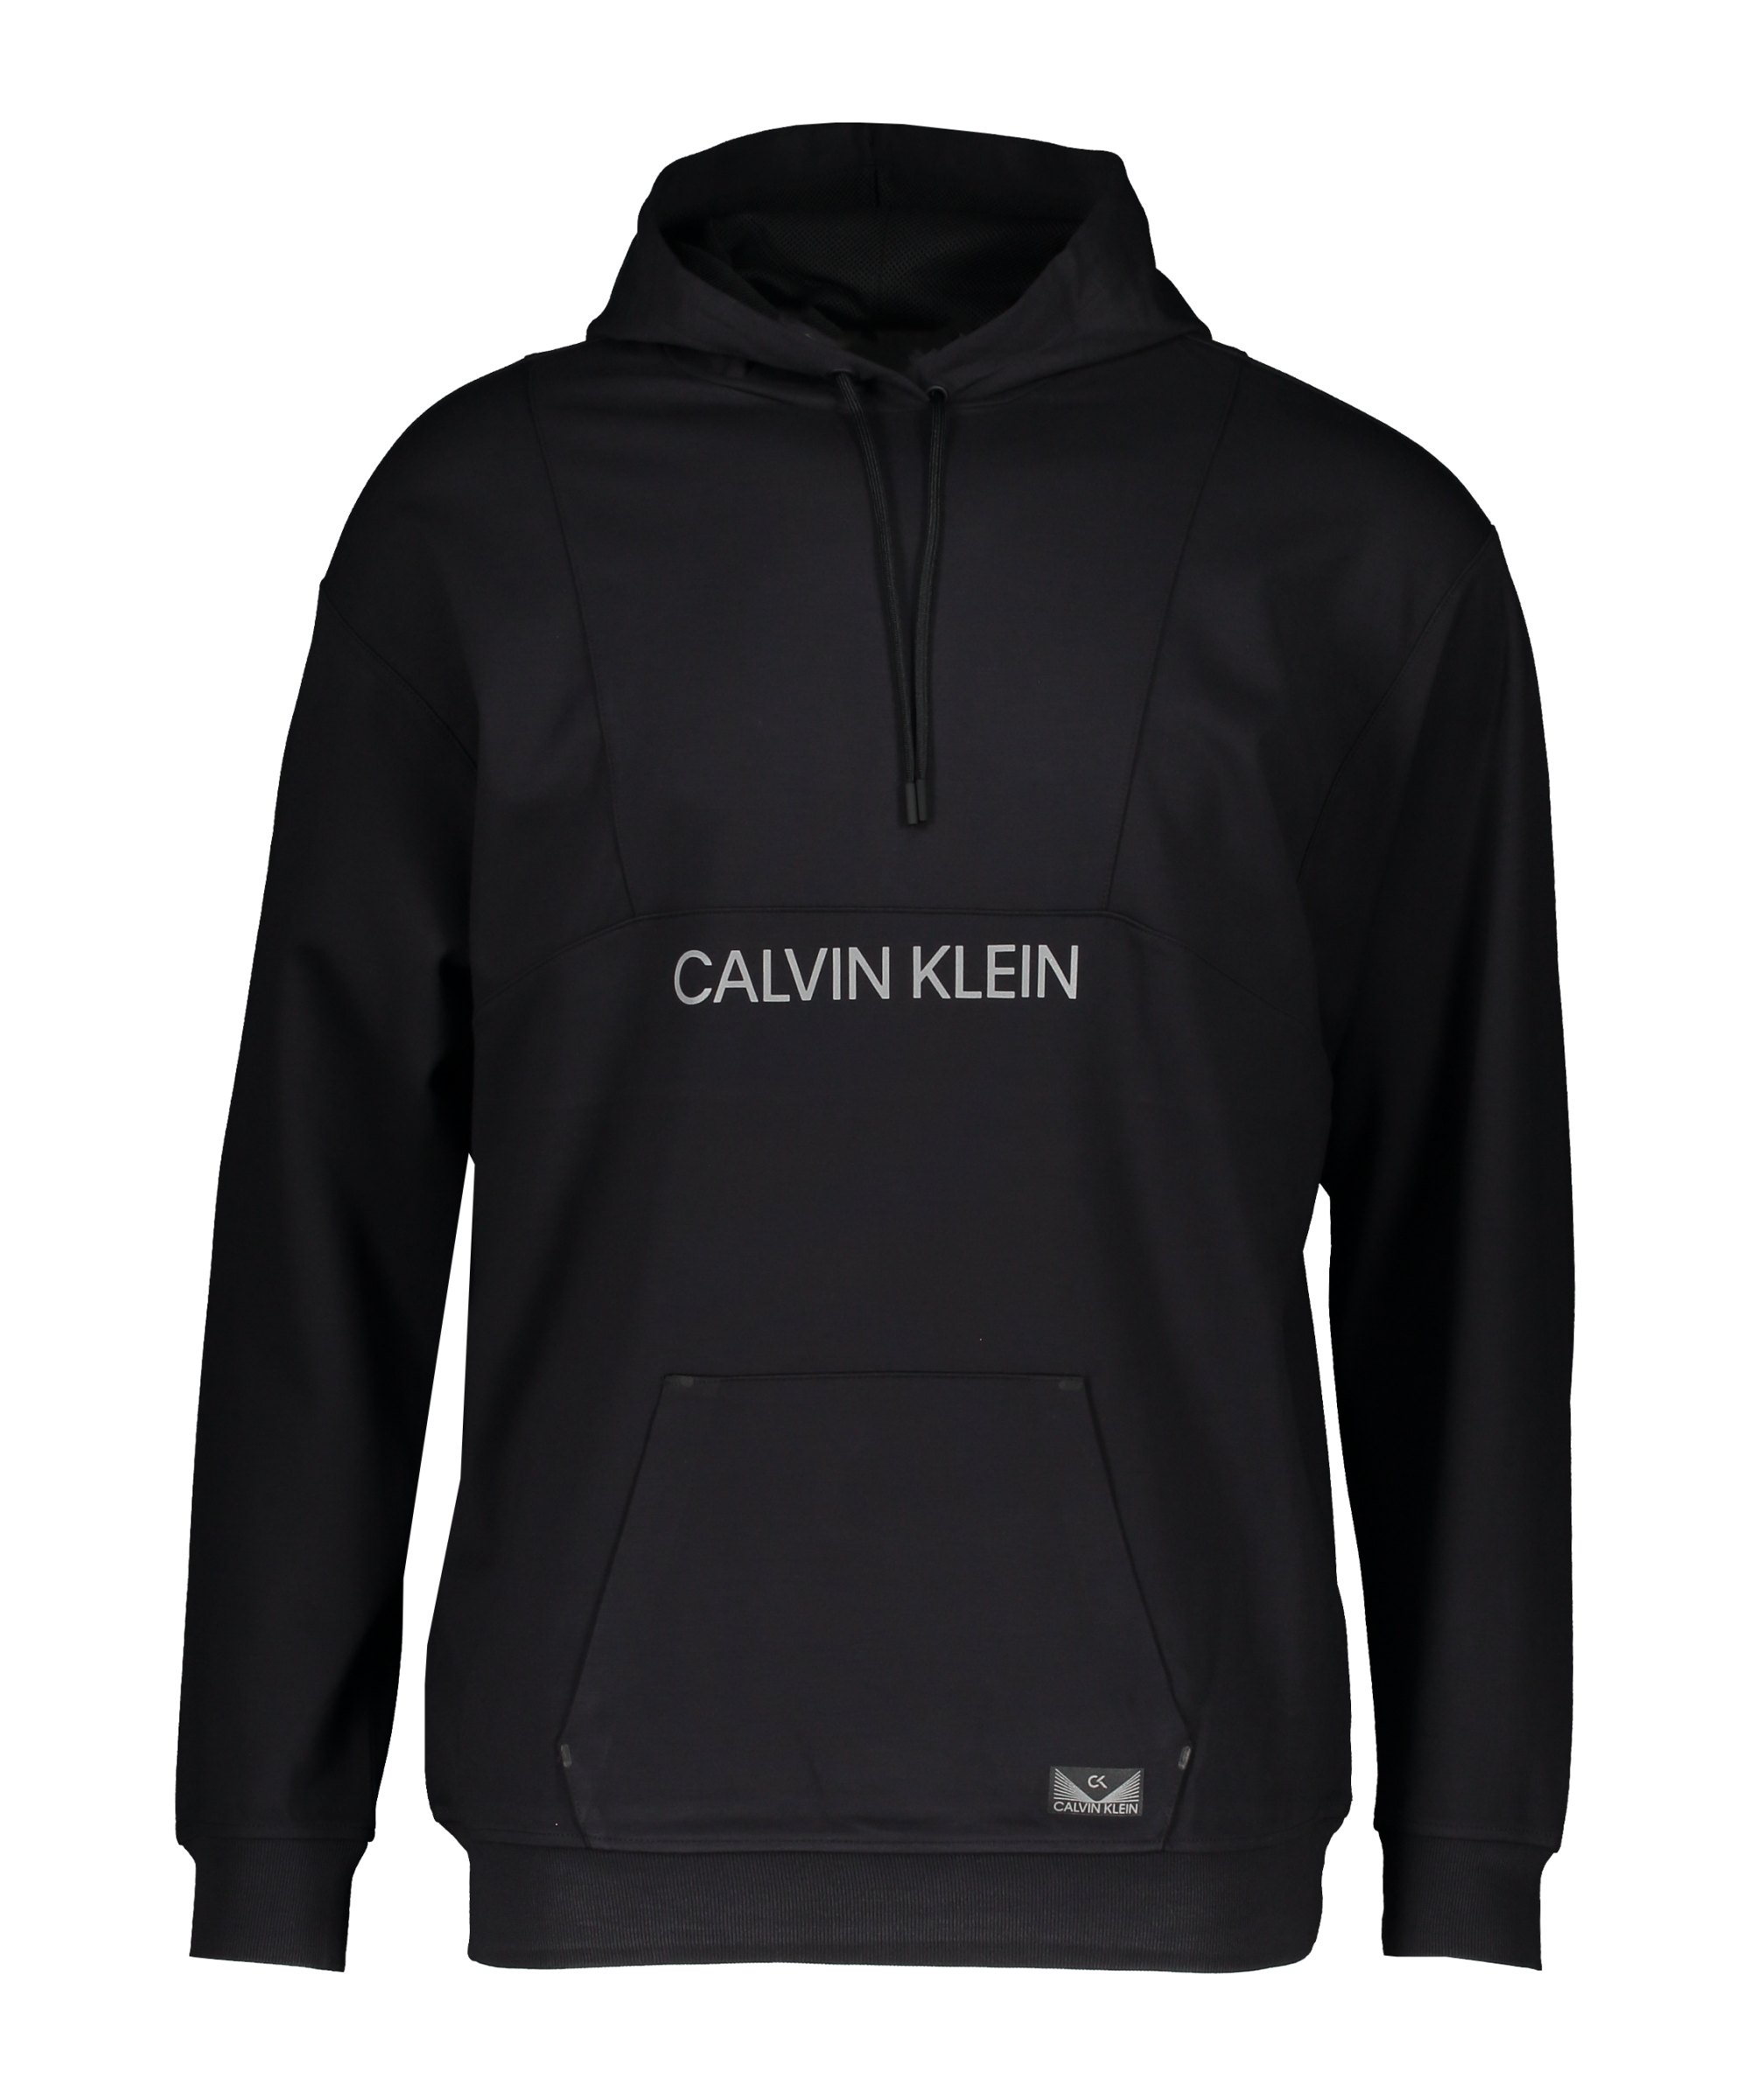 Calvin Klein Performance Hoody Damen Schwarz F001 - schwarz